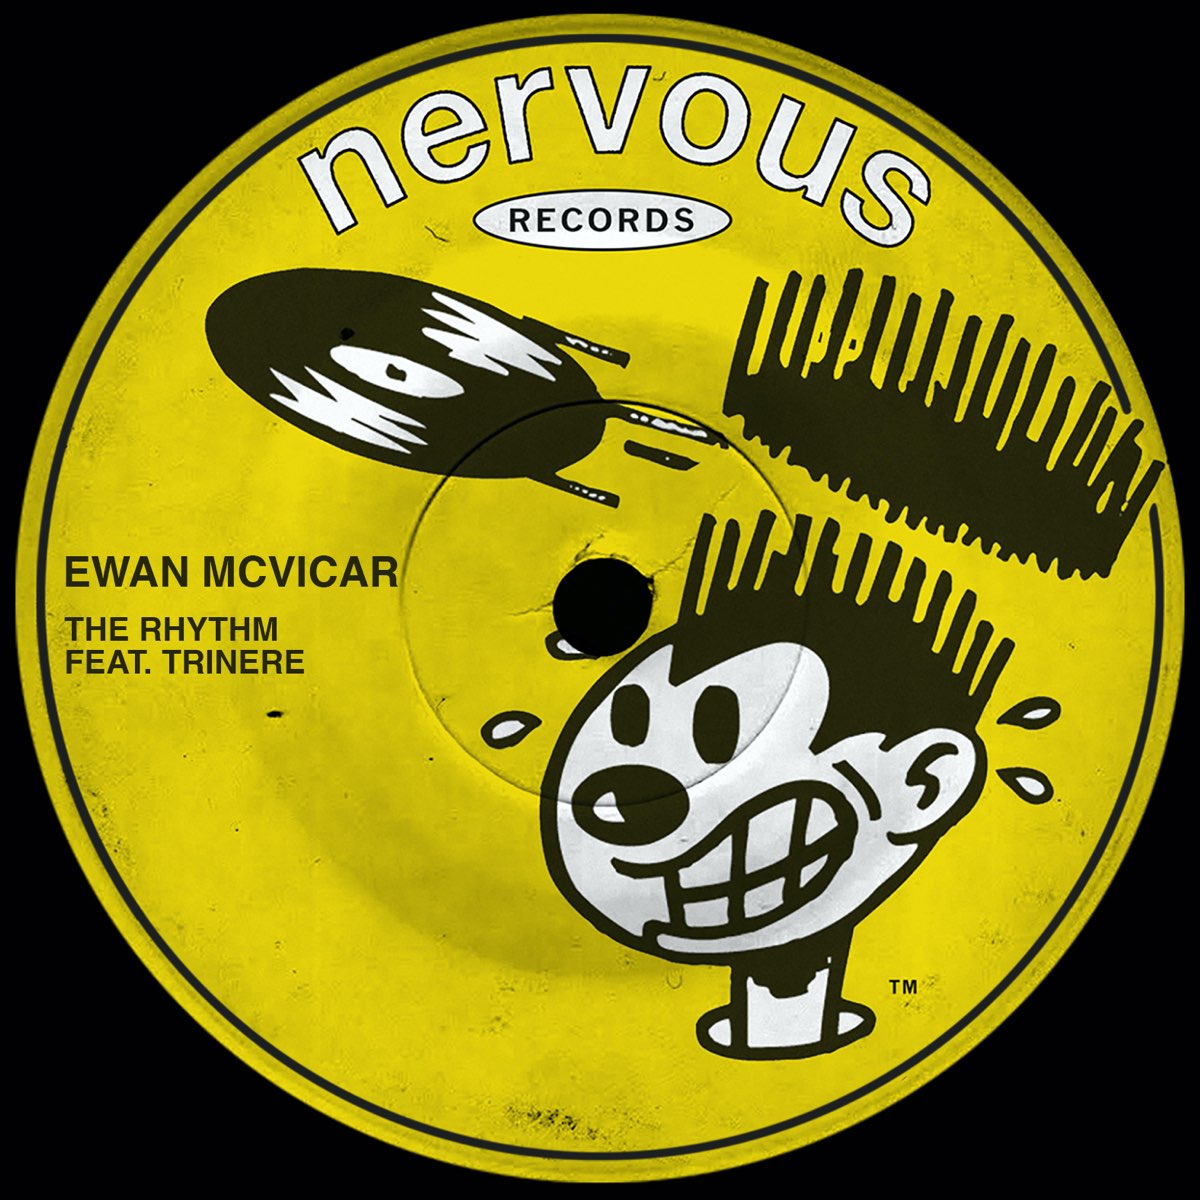 Ewan McVicar featuring Trinere — The Rhythm cover artwork